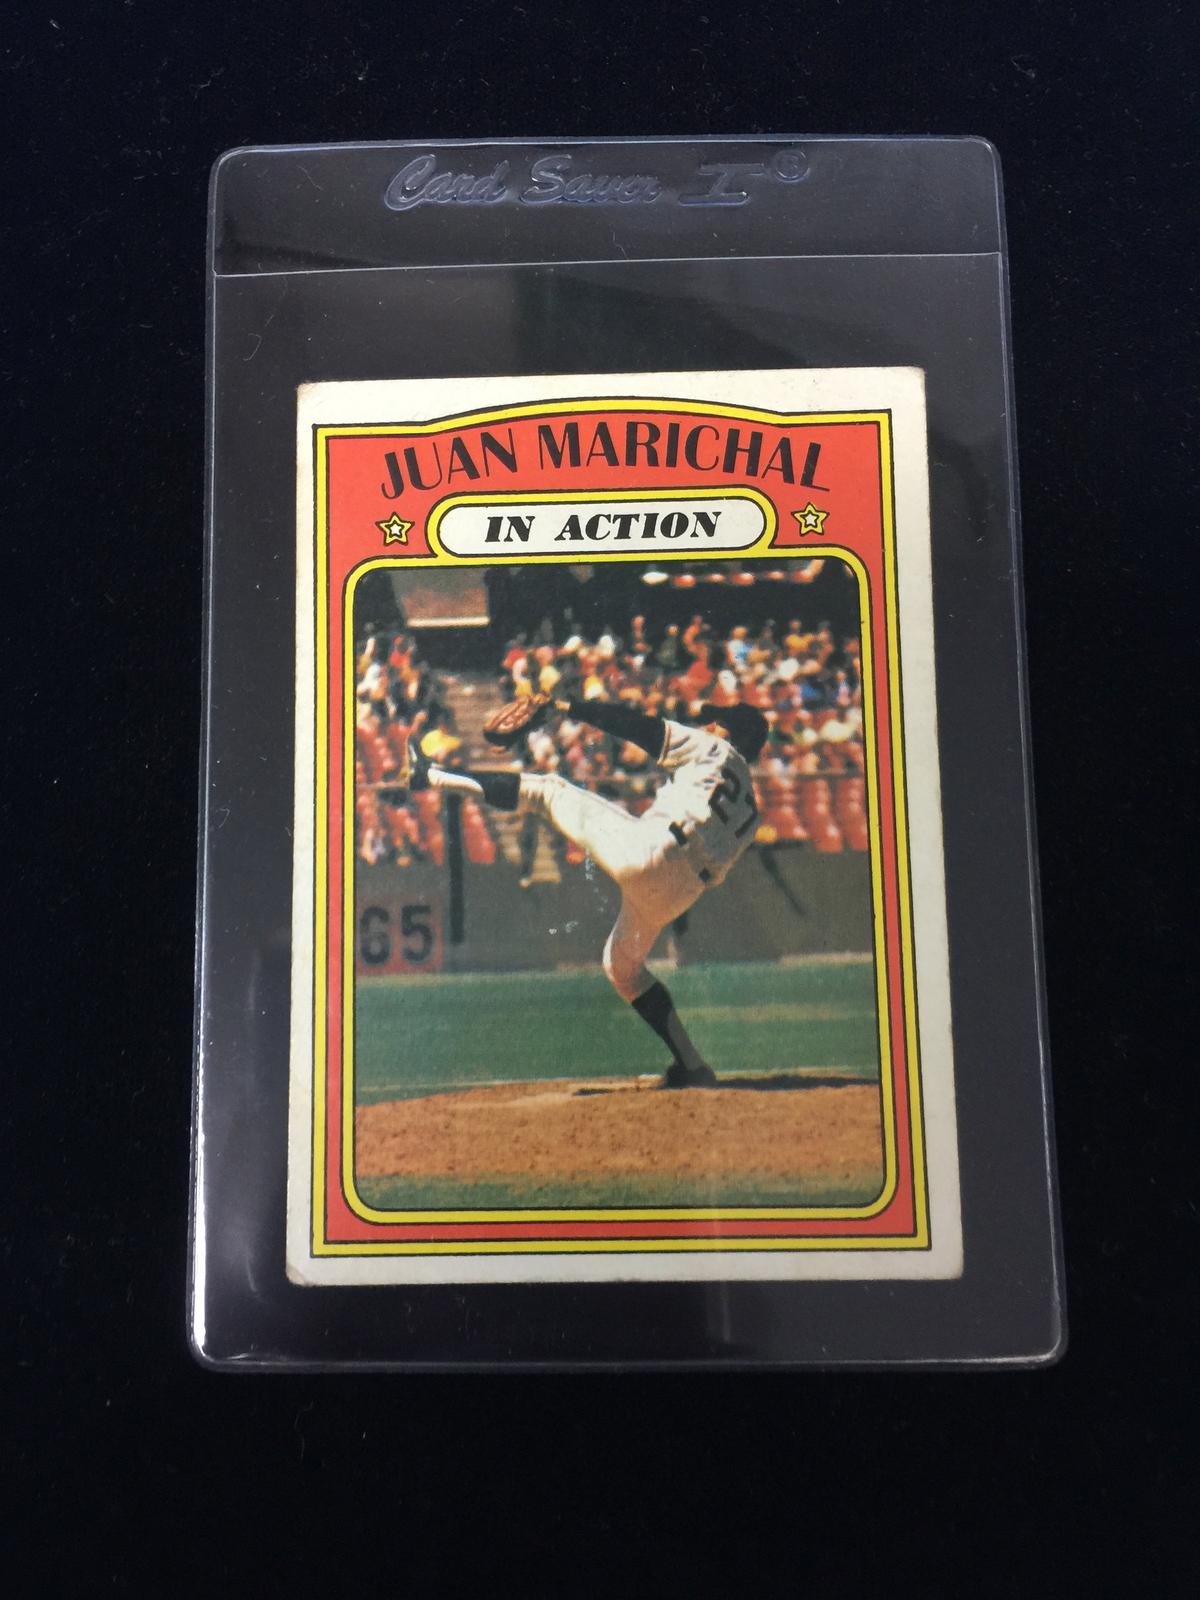 1972 Topps #568 Juan Marichal Giants In Action Baseball Card